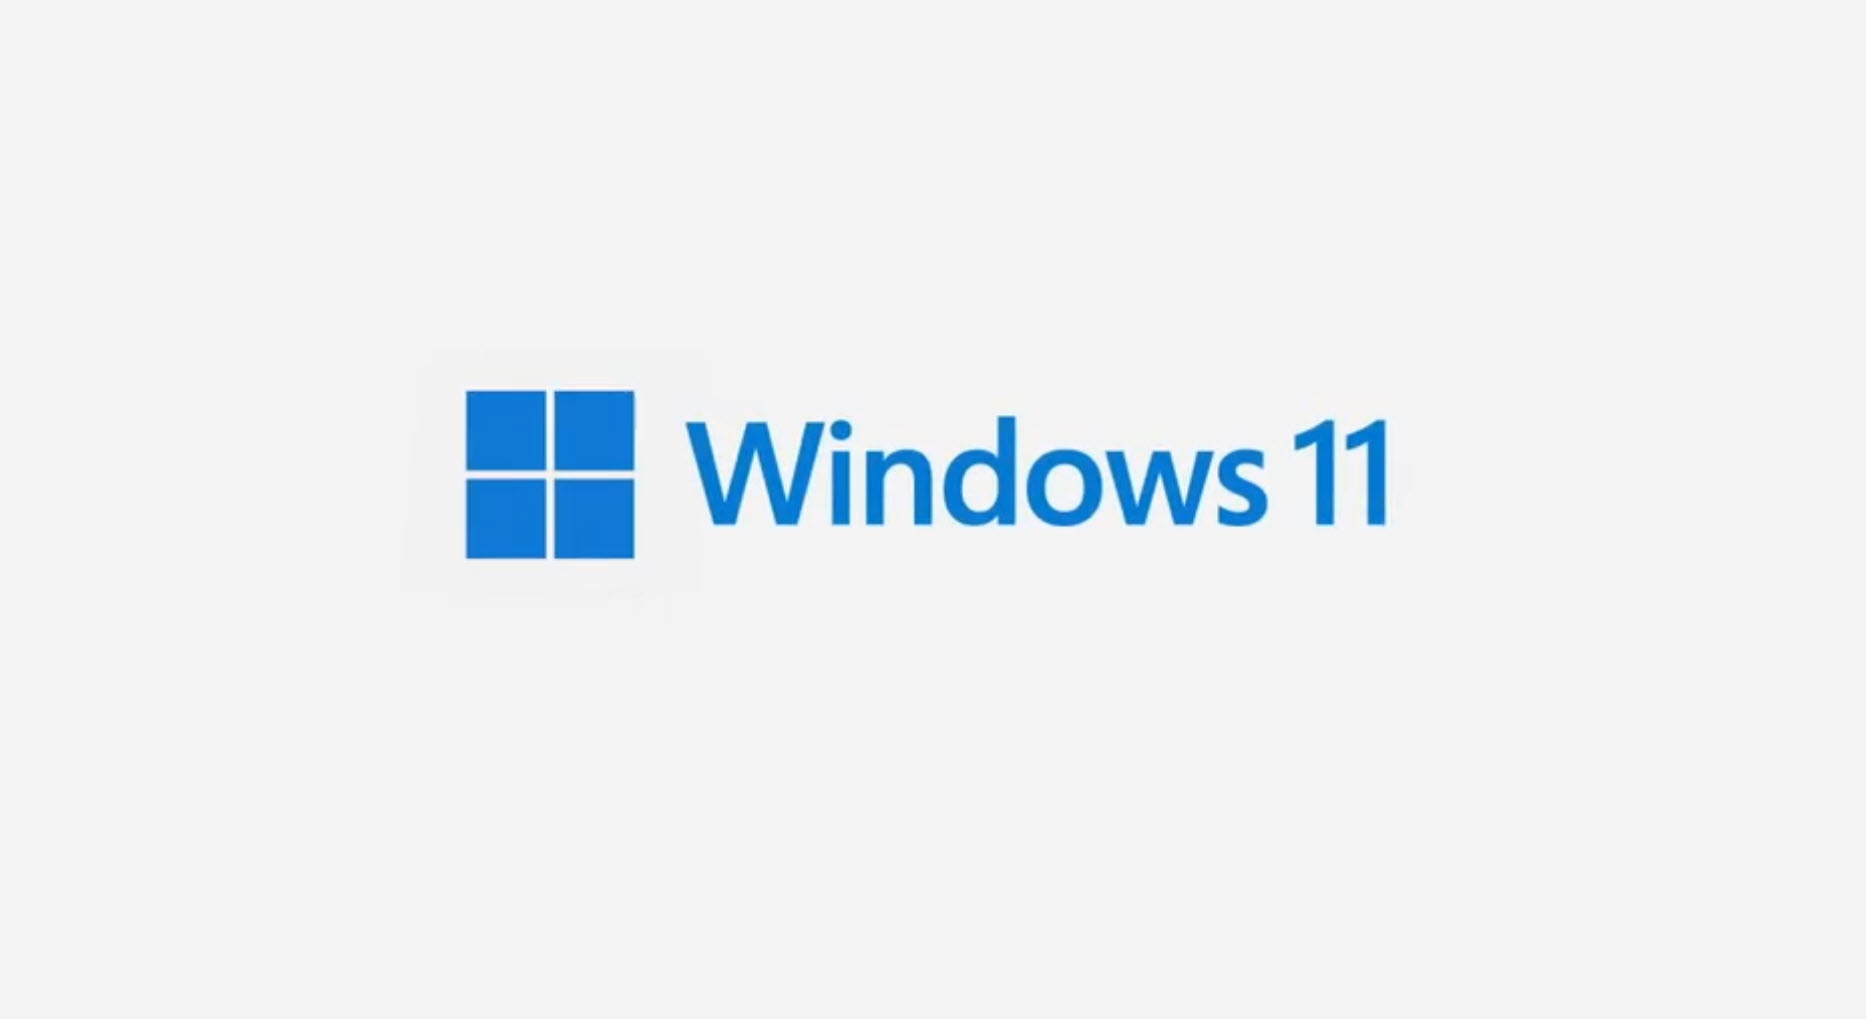 2021 06 24 22 59 49 ไมโครซอฟเปิดตัว Windows 11 อย่างเป็นทางการมาพร้อมฟีเจอร์การทำงานมากมาย